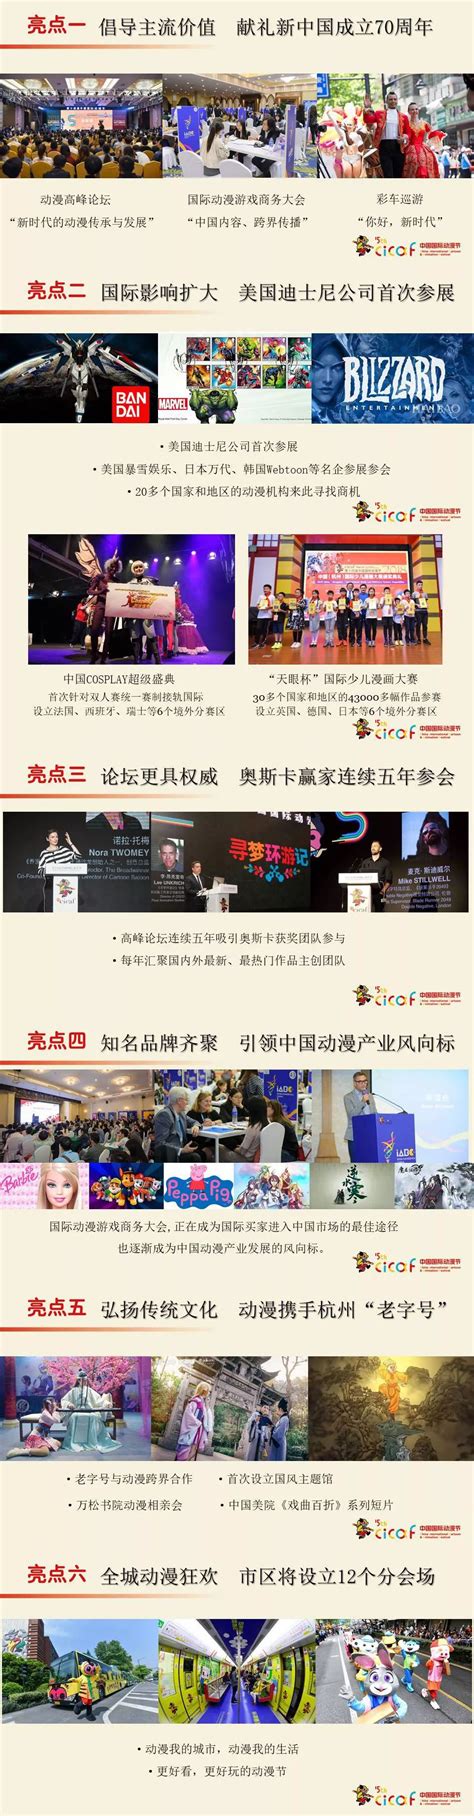 2019中国国际动漫节时间、地点、看点、门票- 杭州本地宝